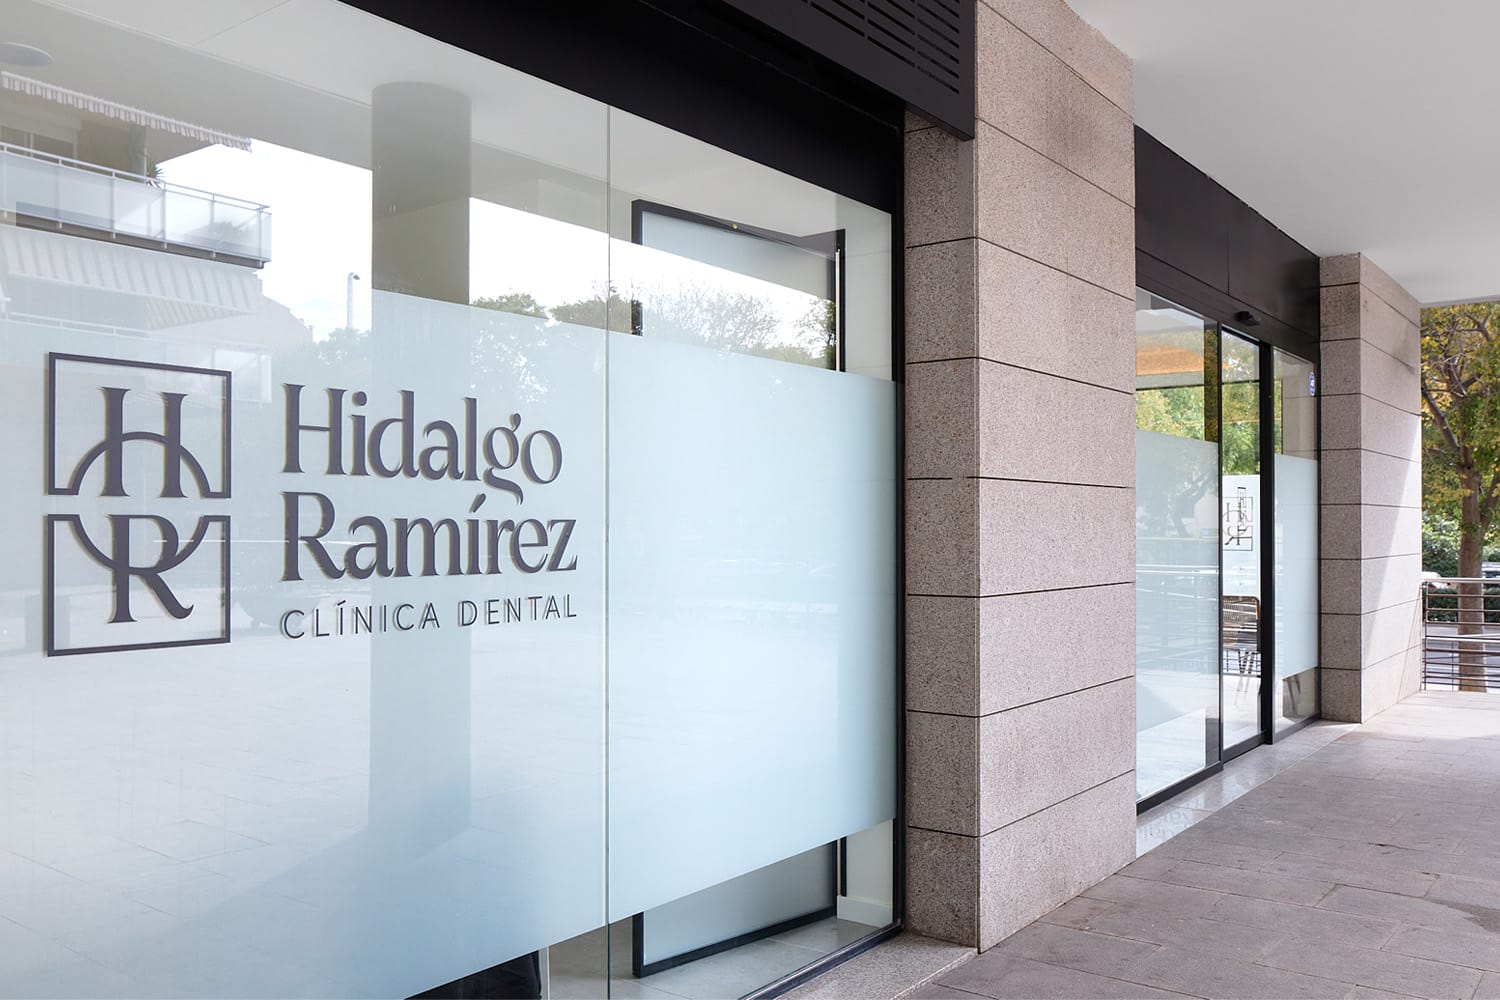 Fachada de la clínica dental Hidalgo Ramírez